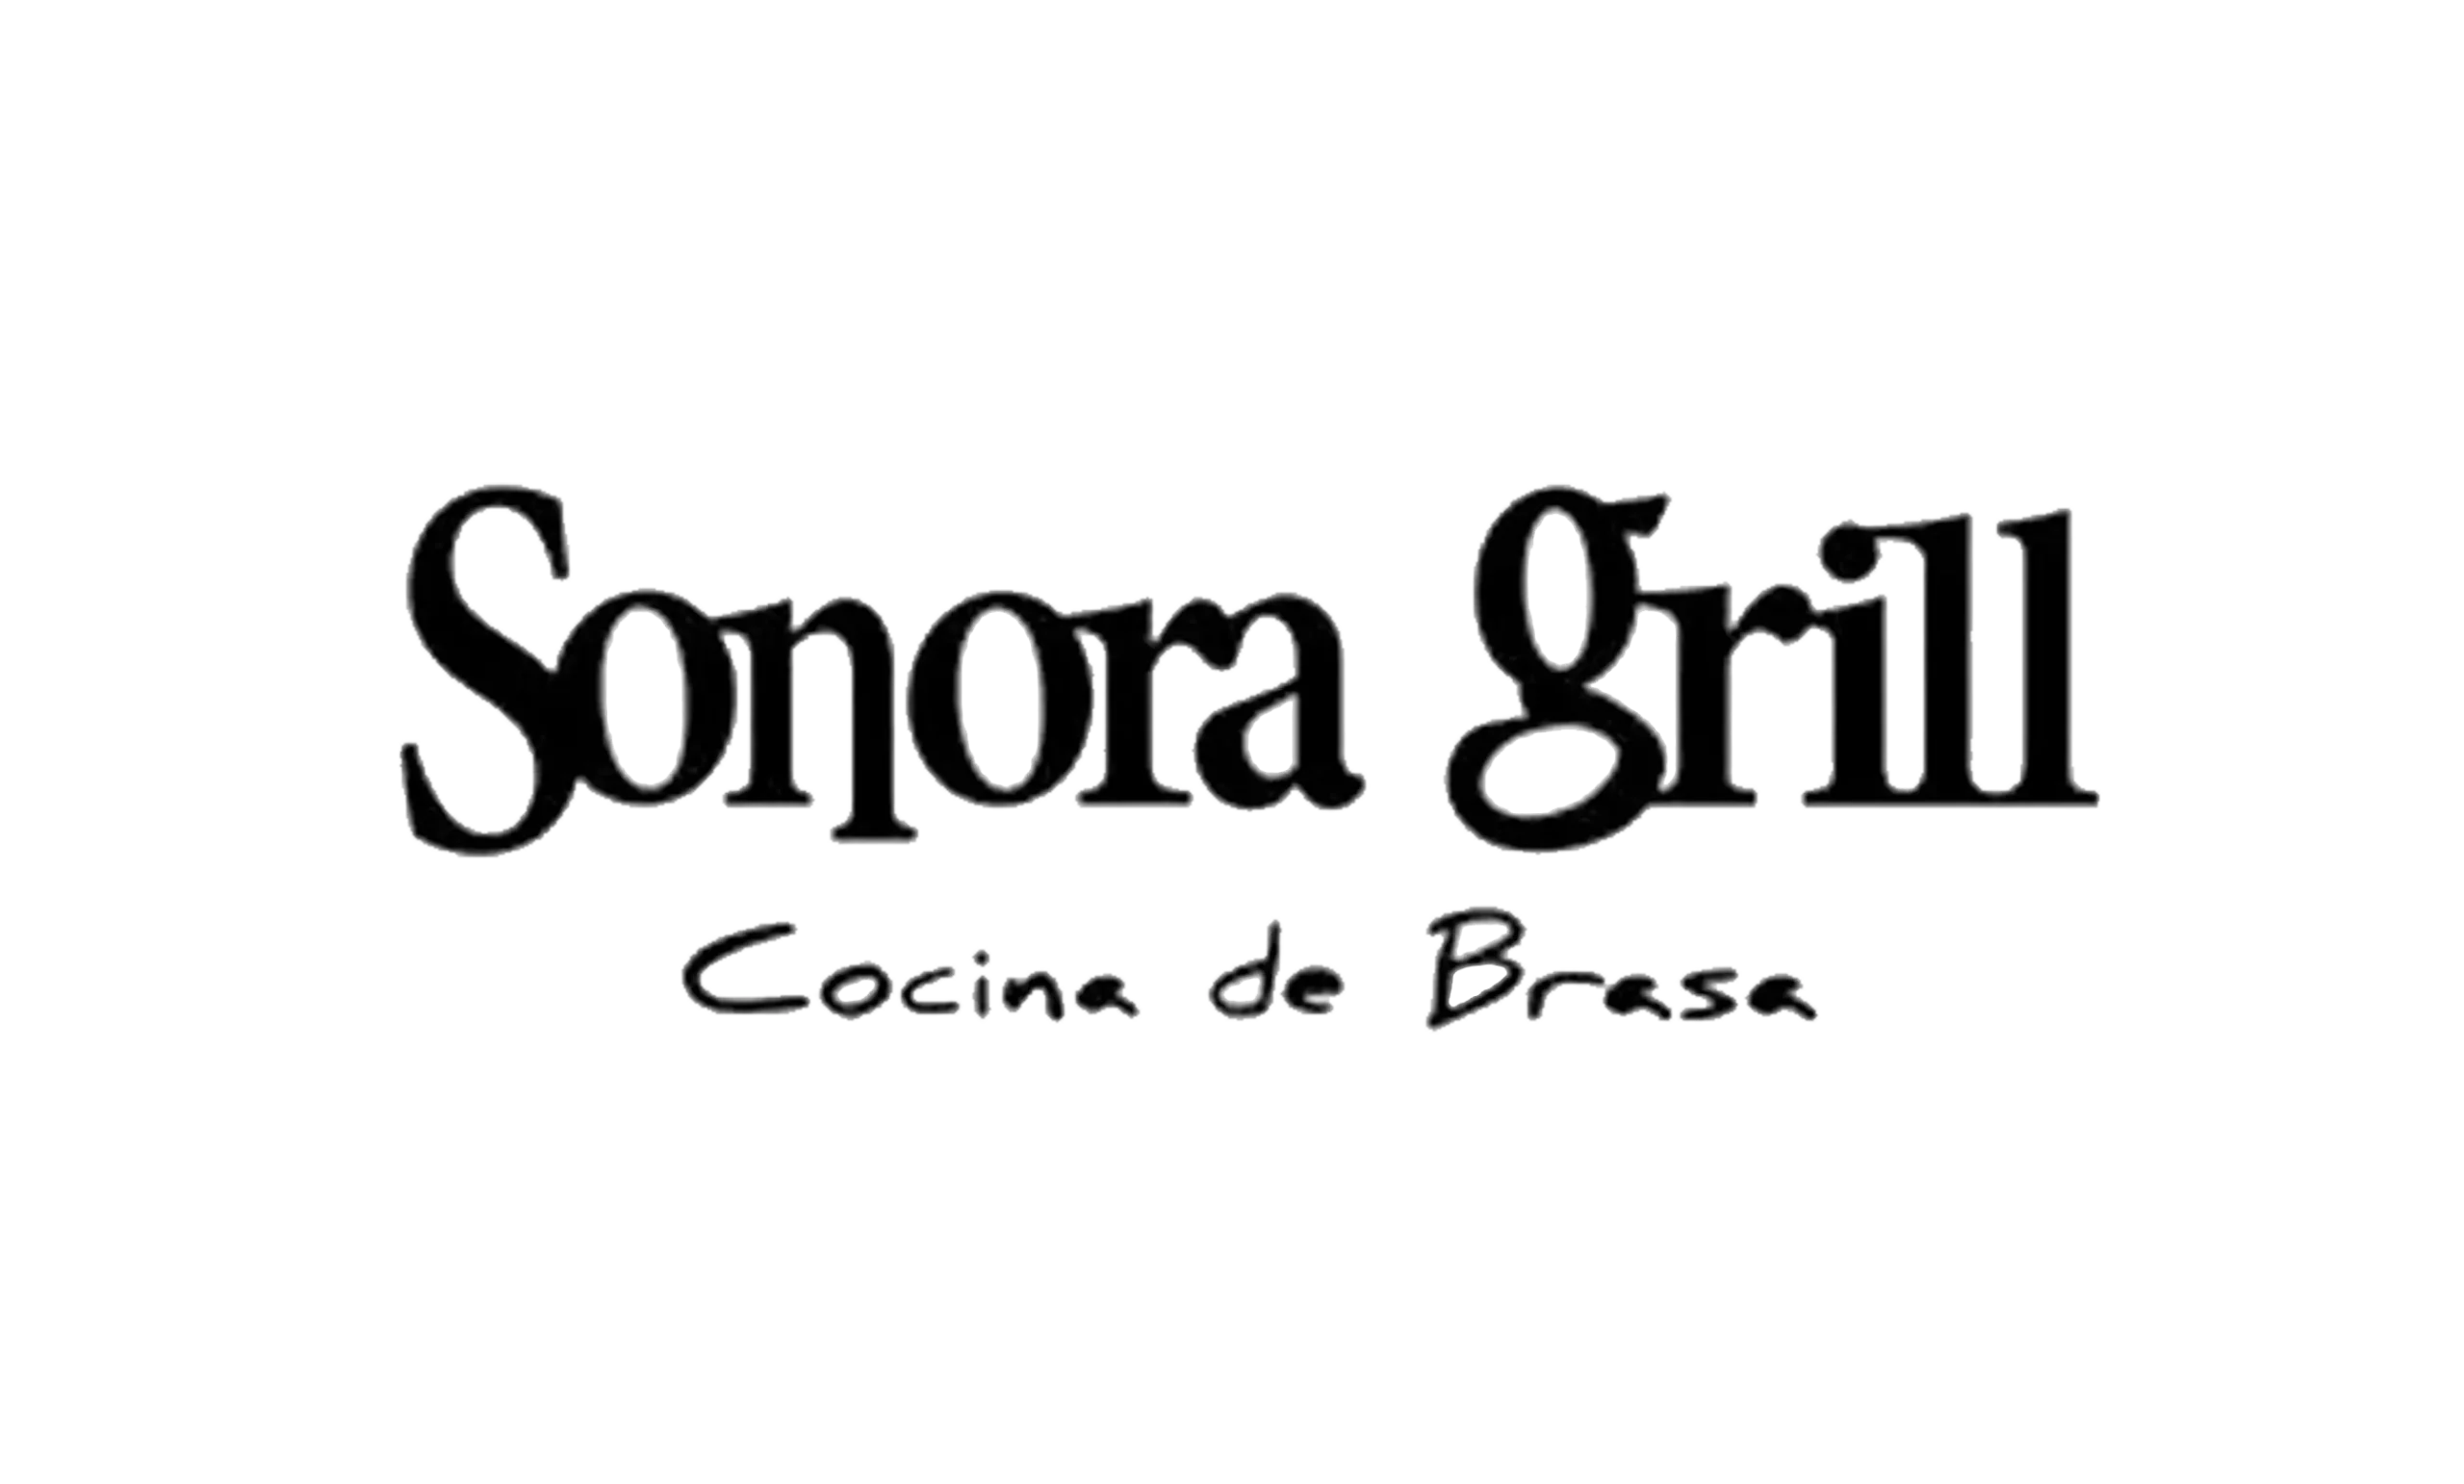 Sonora-Grill-1 copia